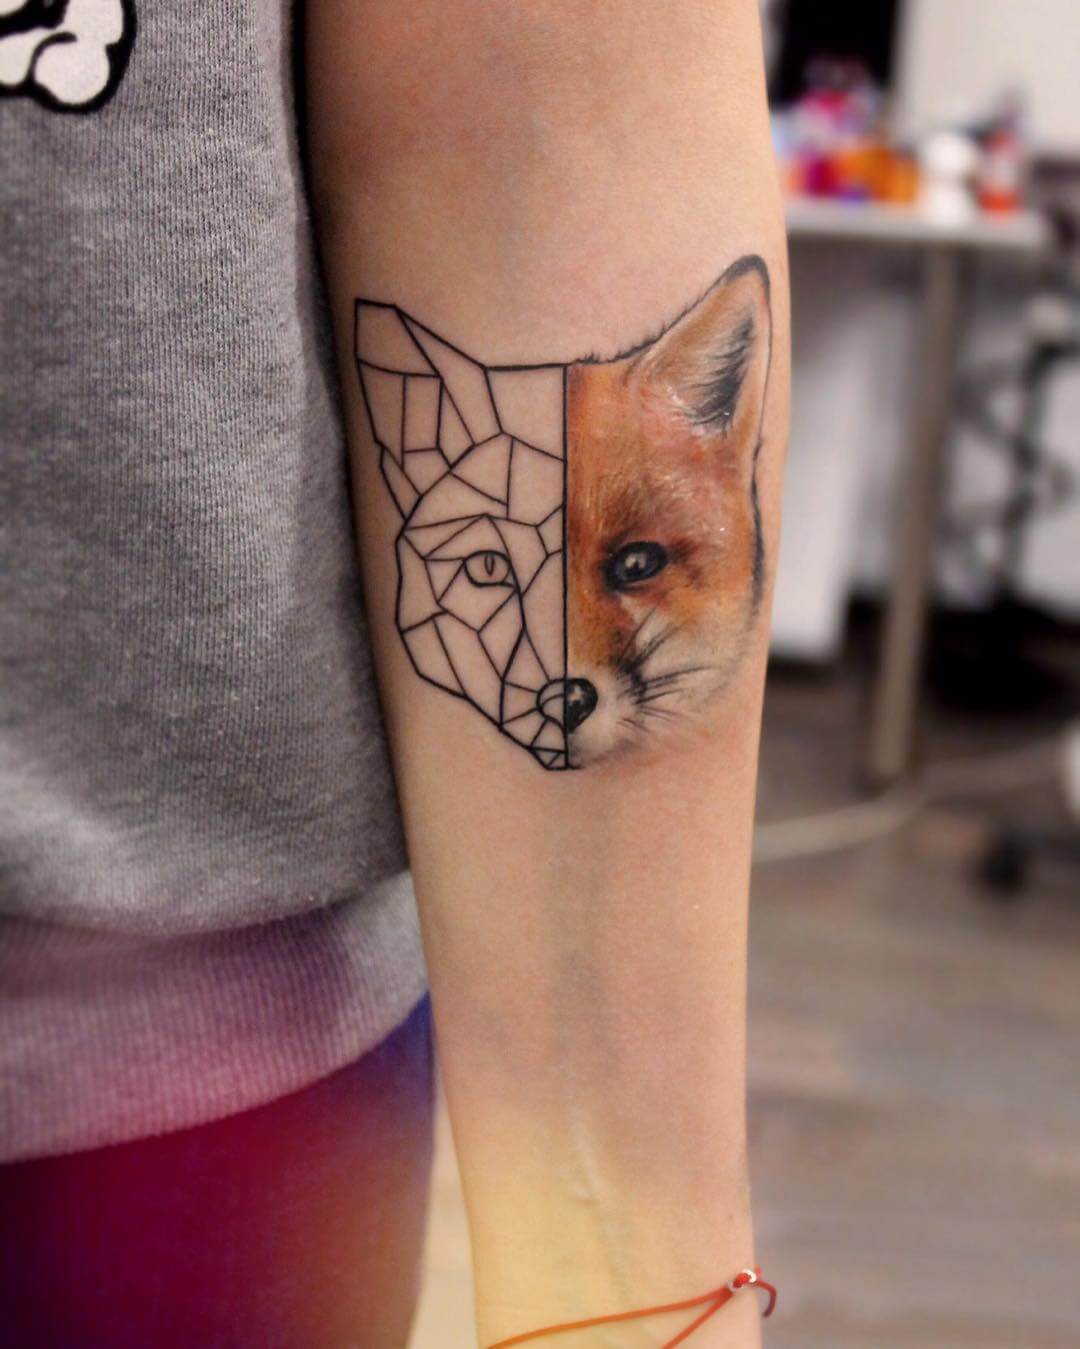 Geometric half fox head arm tattoo by yershova_anna